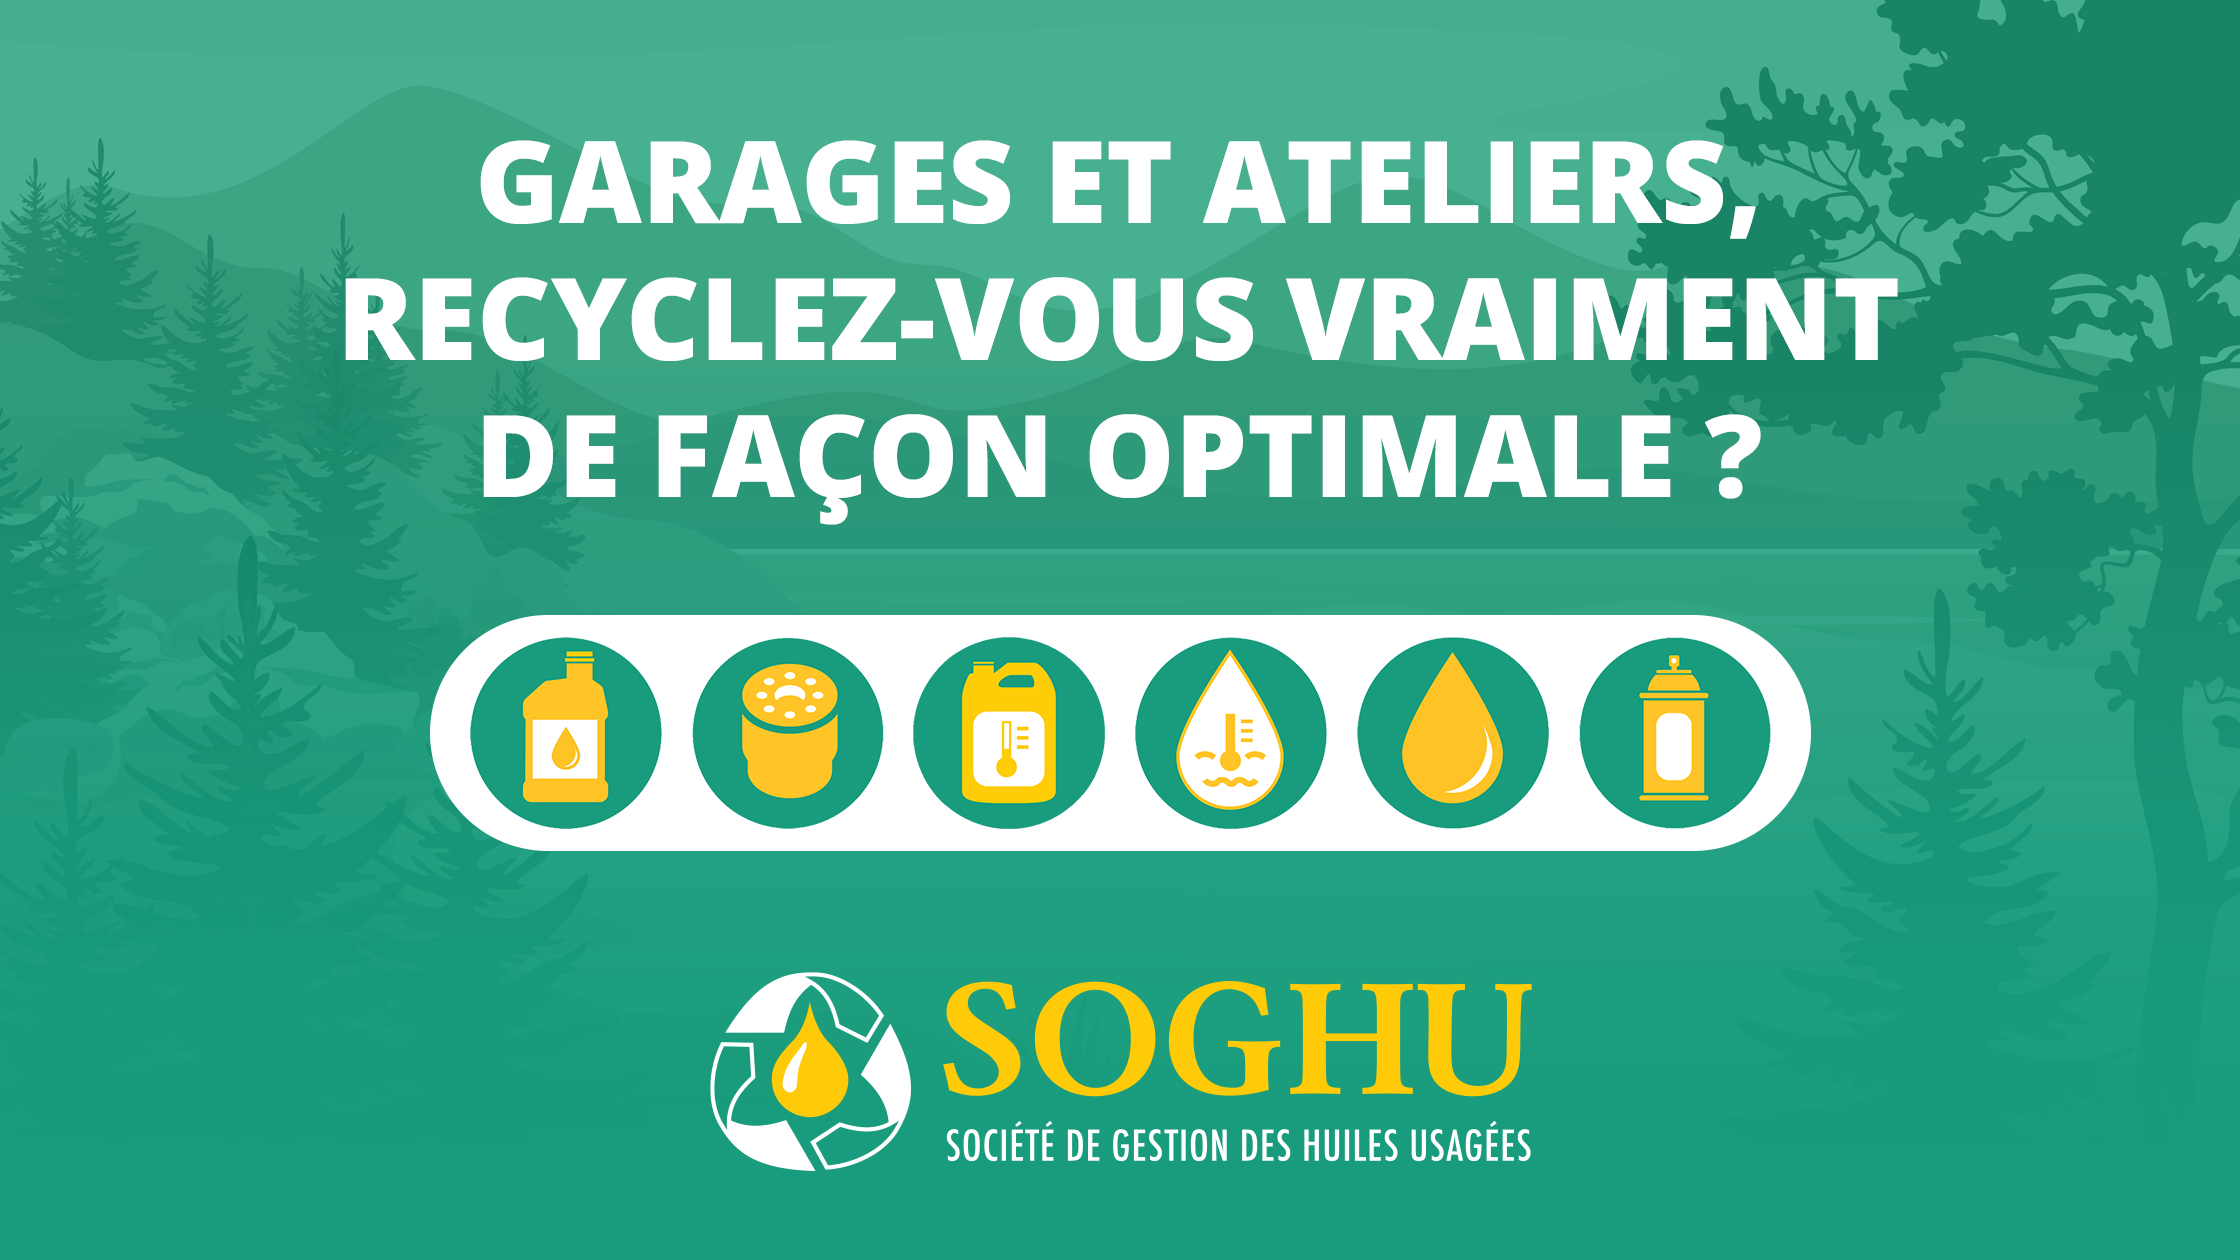 Soghu - Garages et ateliers, recyclez-vous vraiment de façon optimale ?